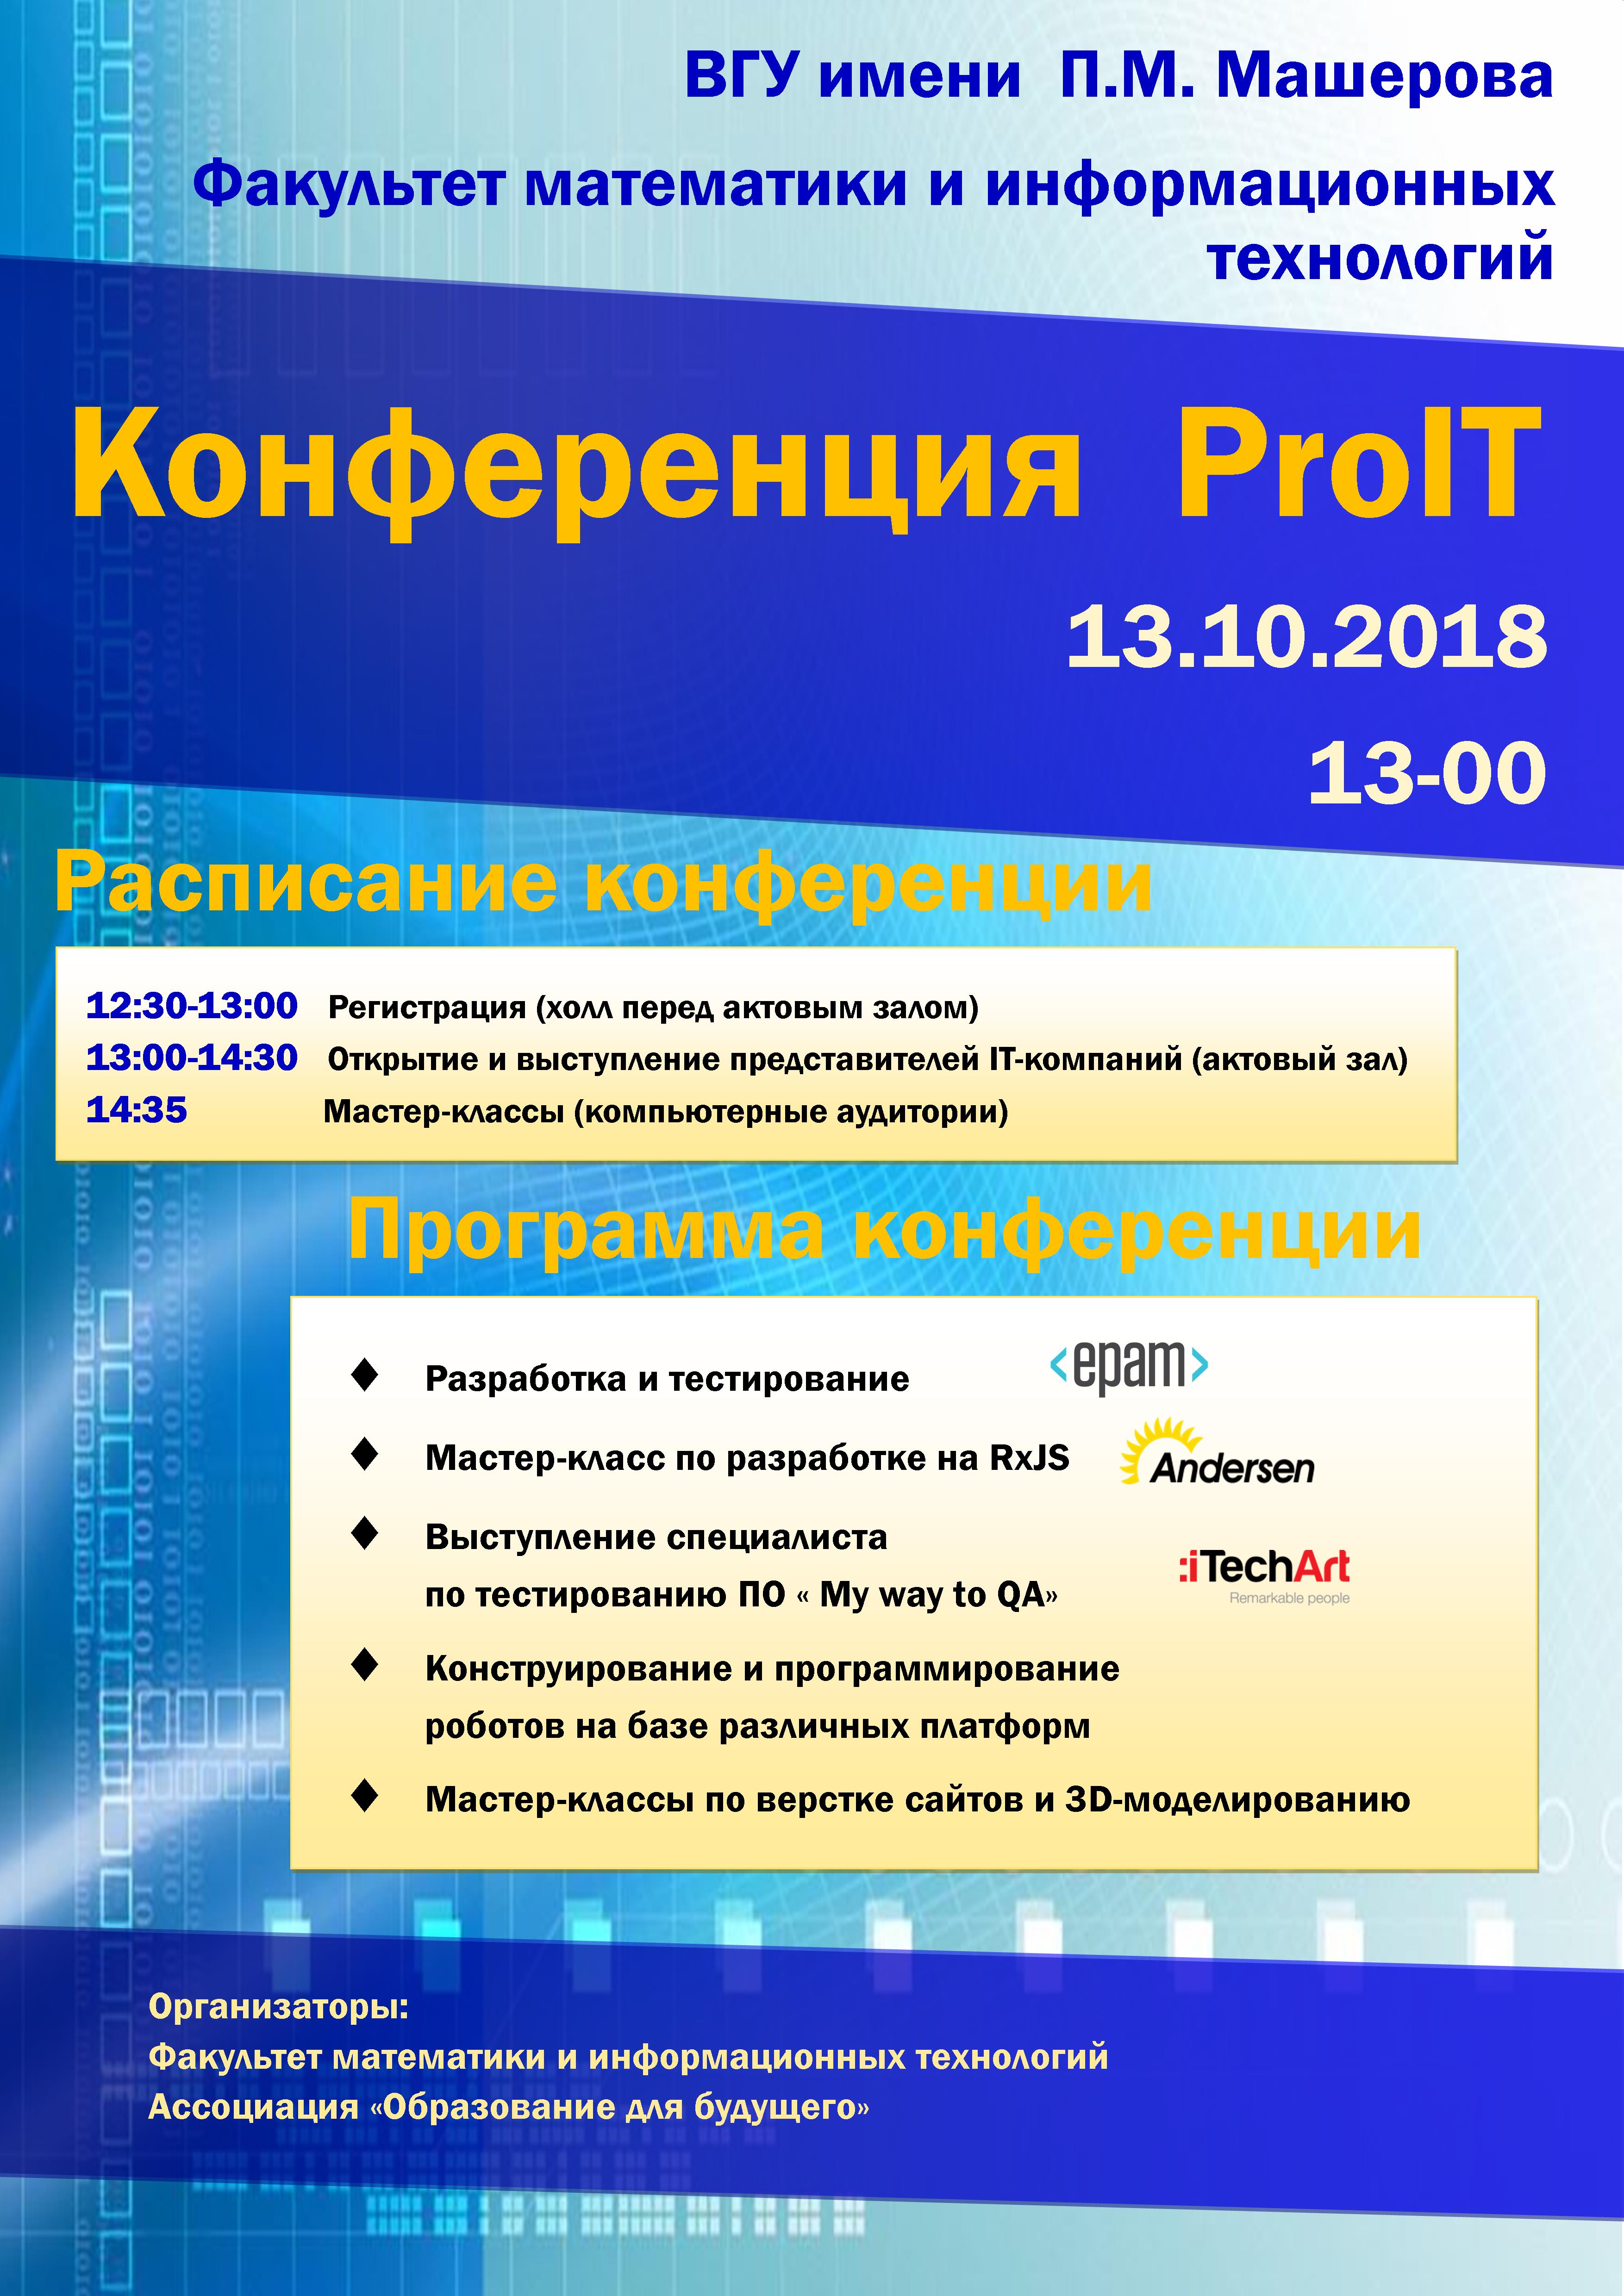 13 октября в 13:00 в актовом зале пройдет конференция ProIT